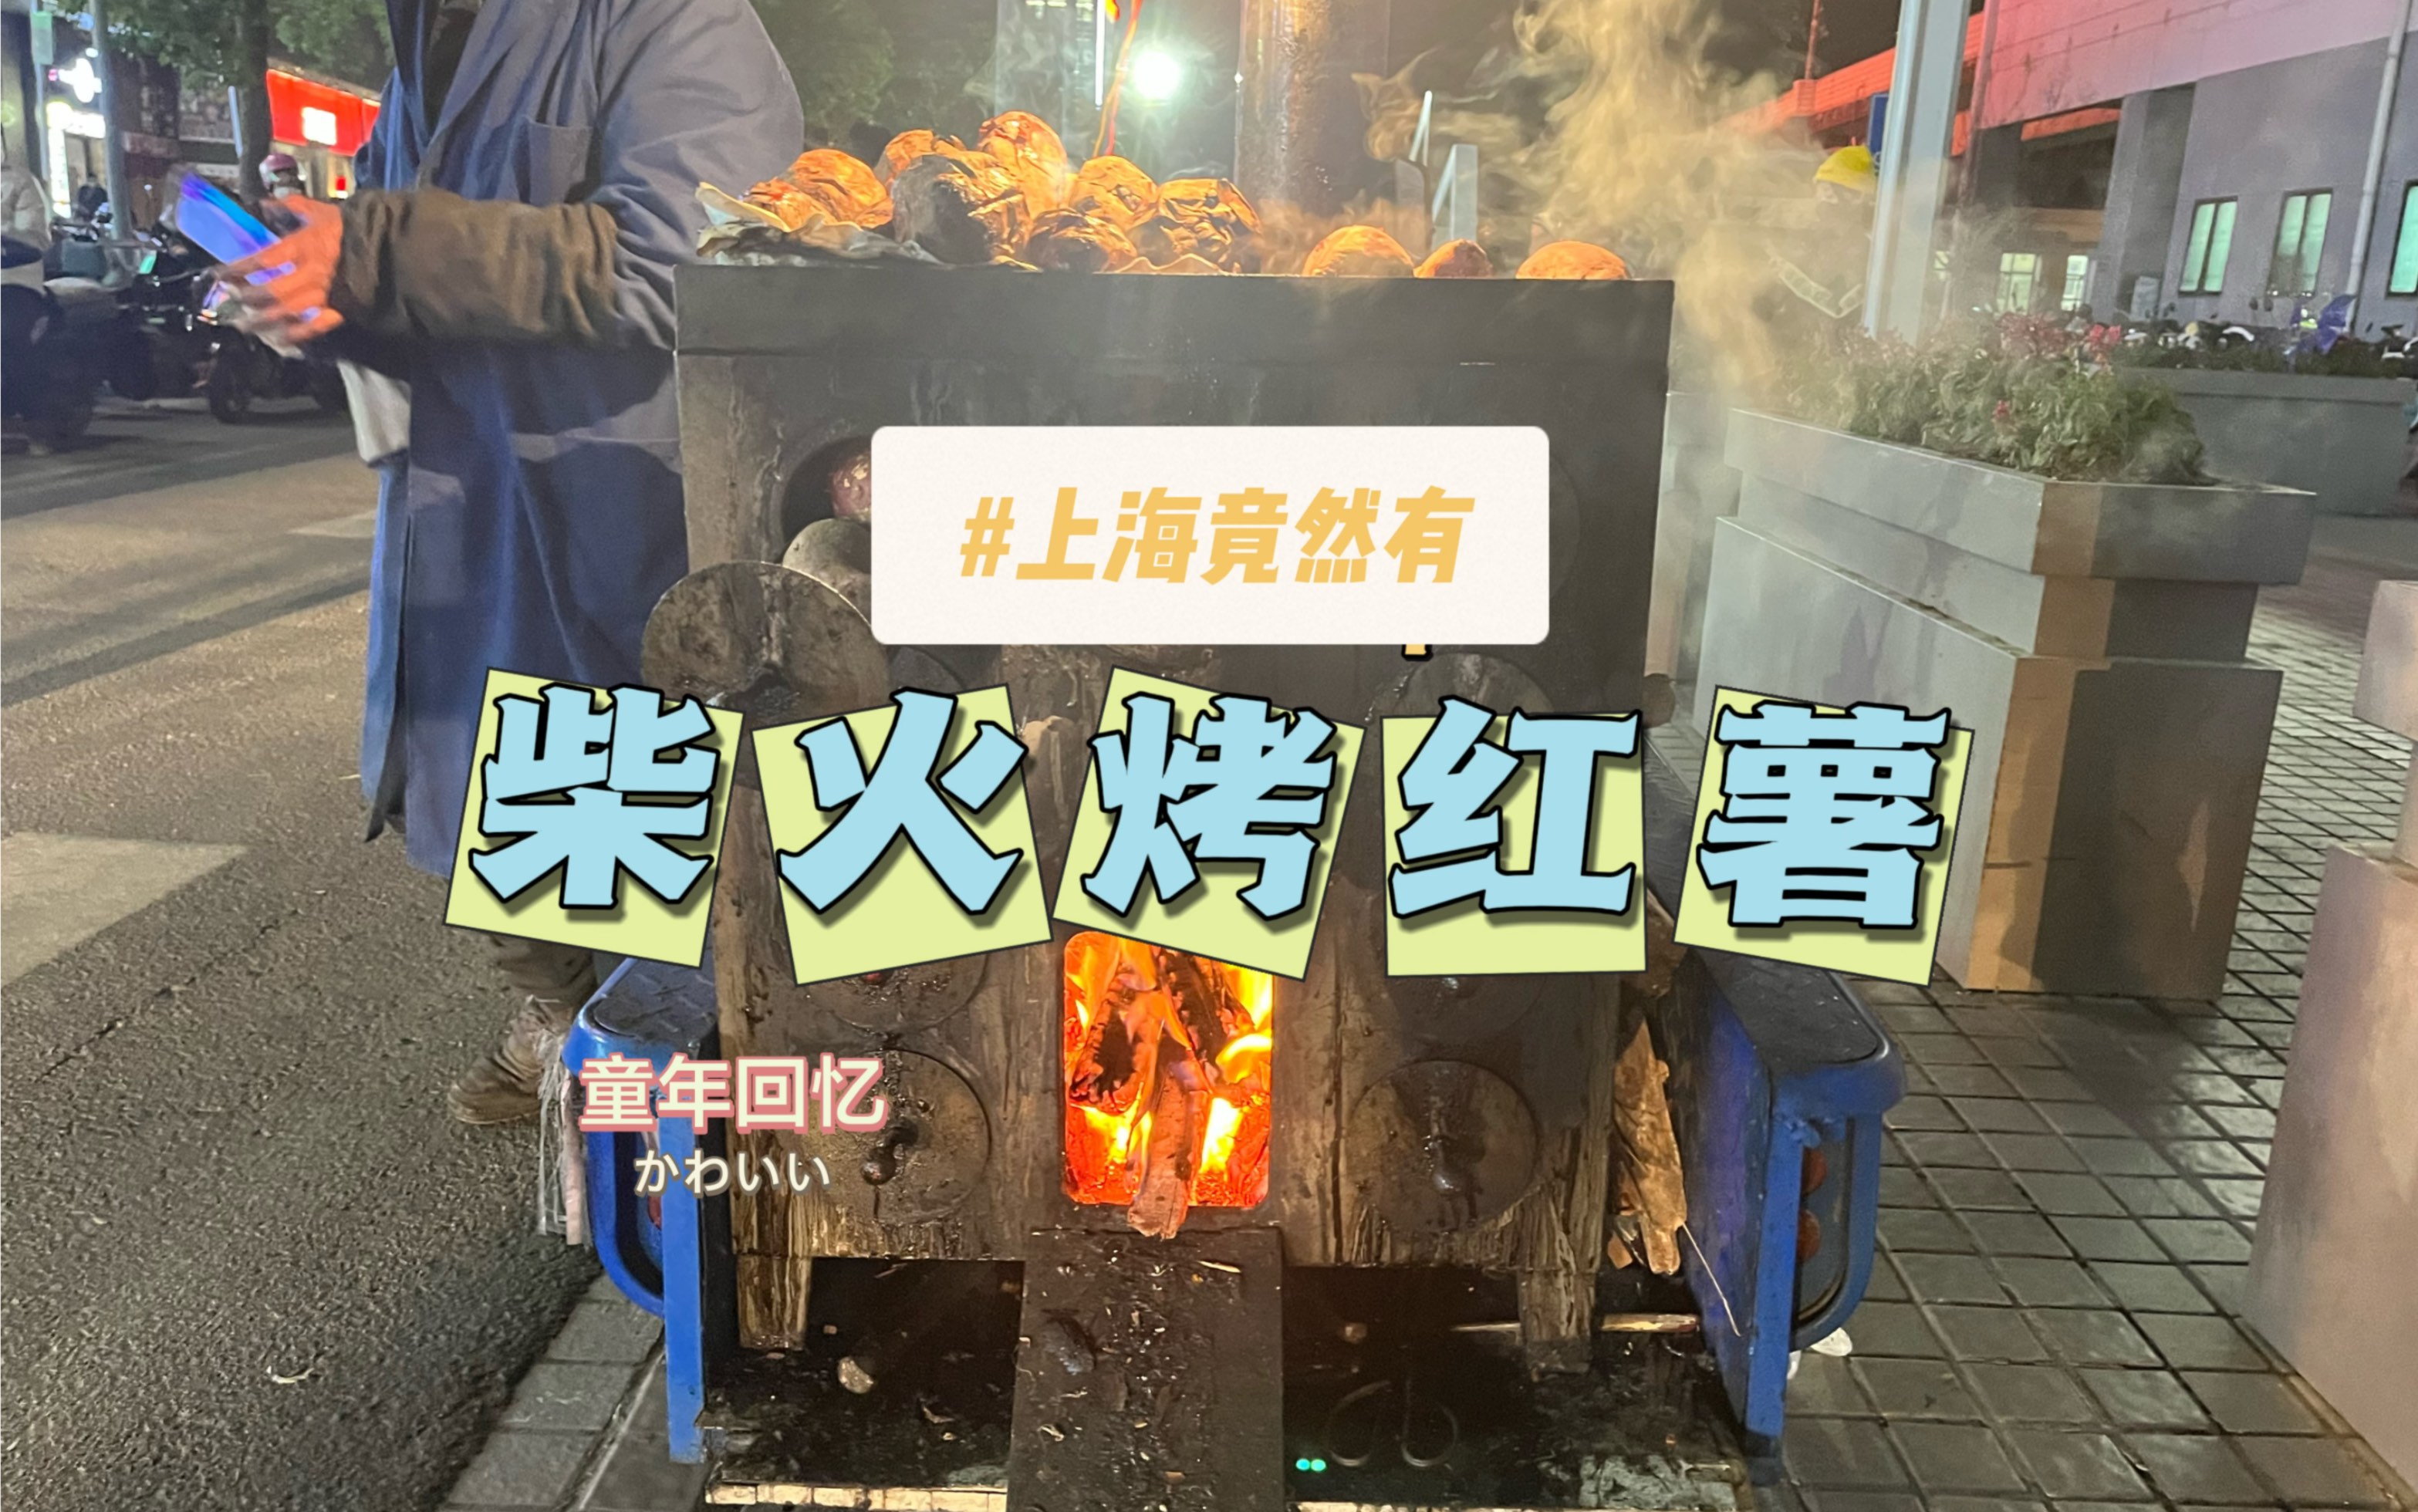 国际大都市的上海竟然有卖柴火烤红薯的，哎哟喂，我真幸运。那味道真叫一个好